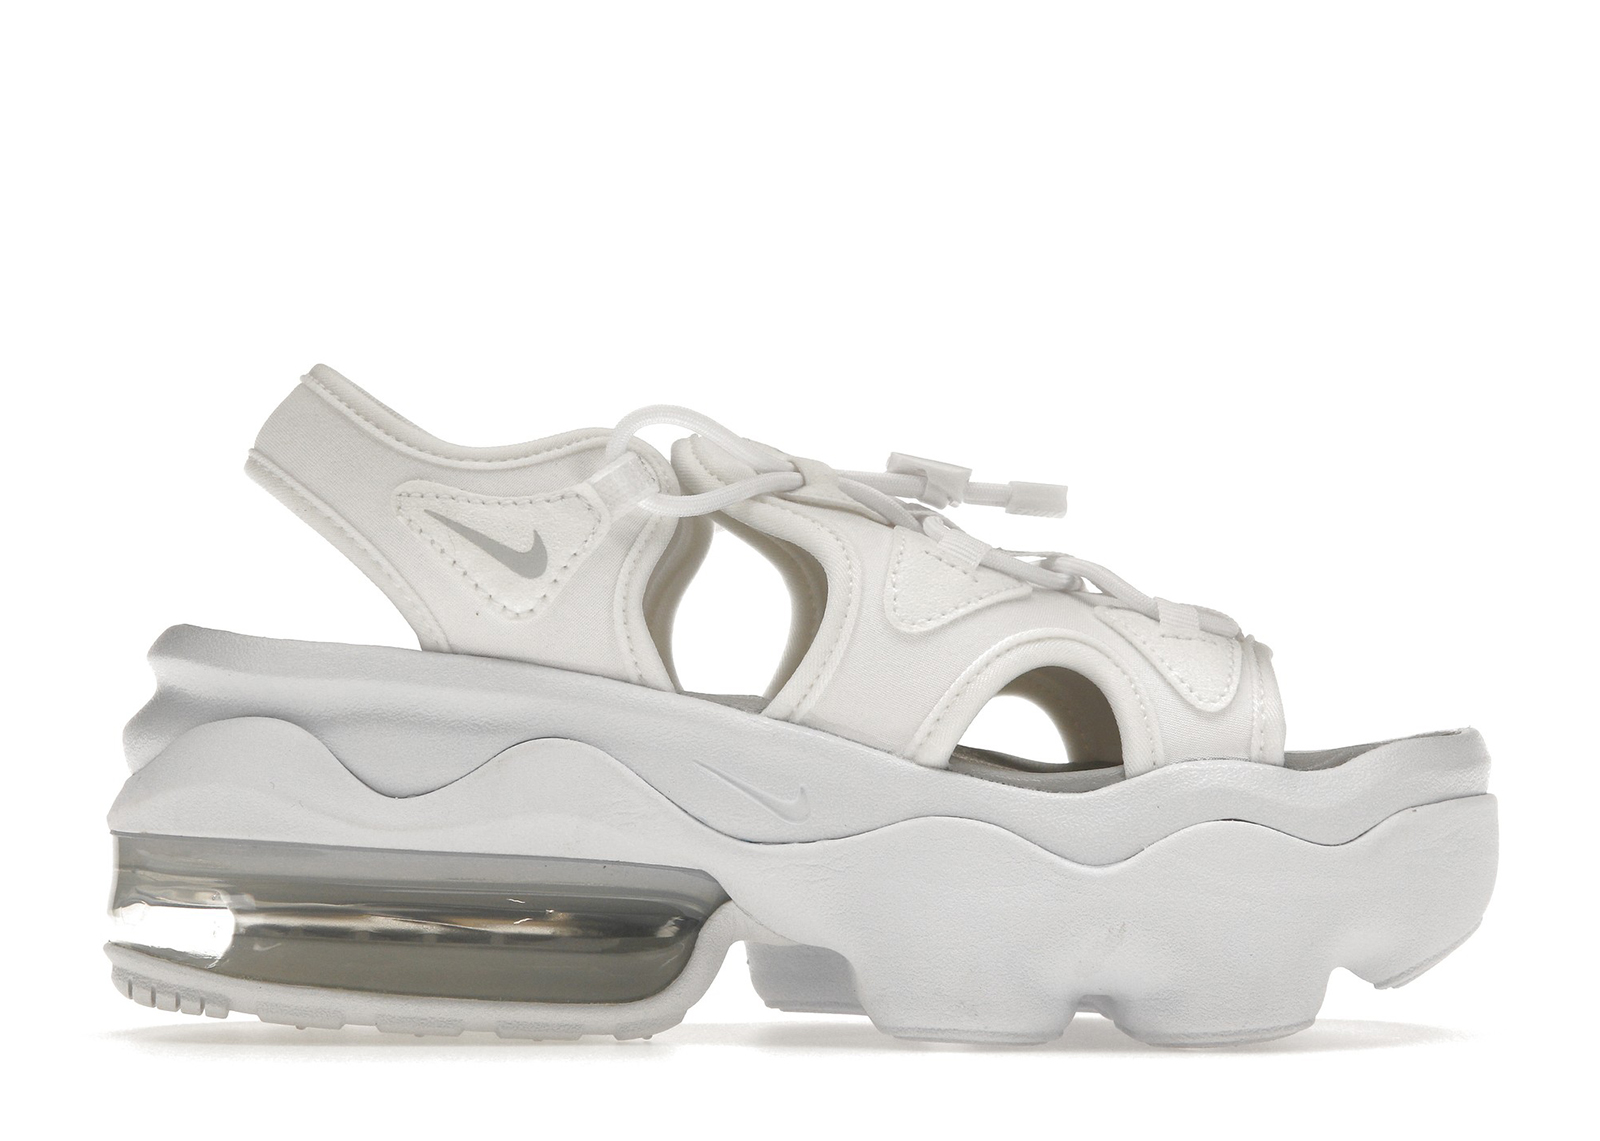 Nike Air Max Koko White (Women's) - CW9705-100/CI8798